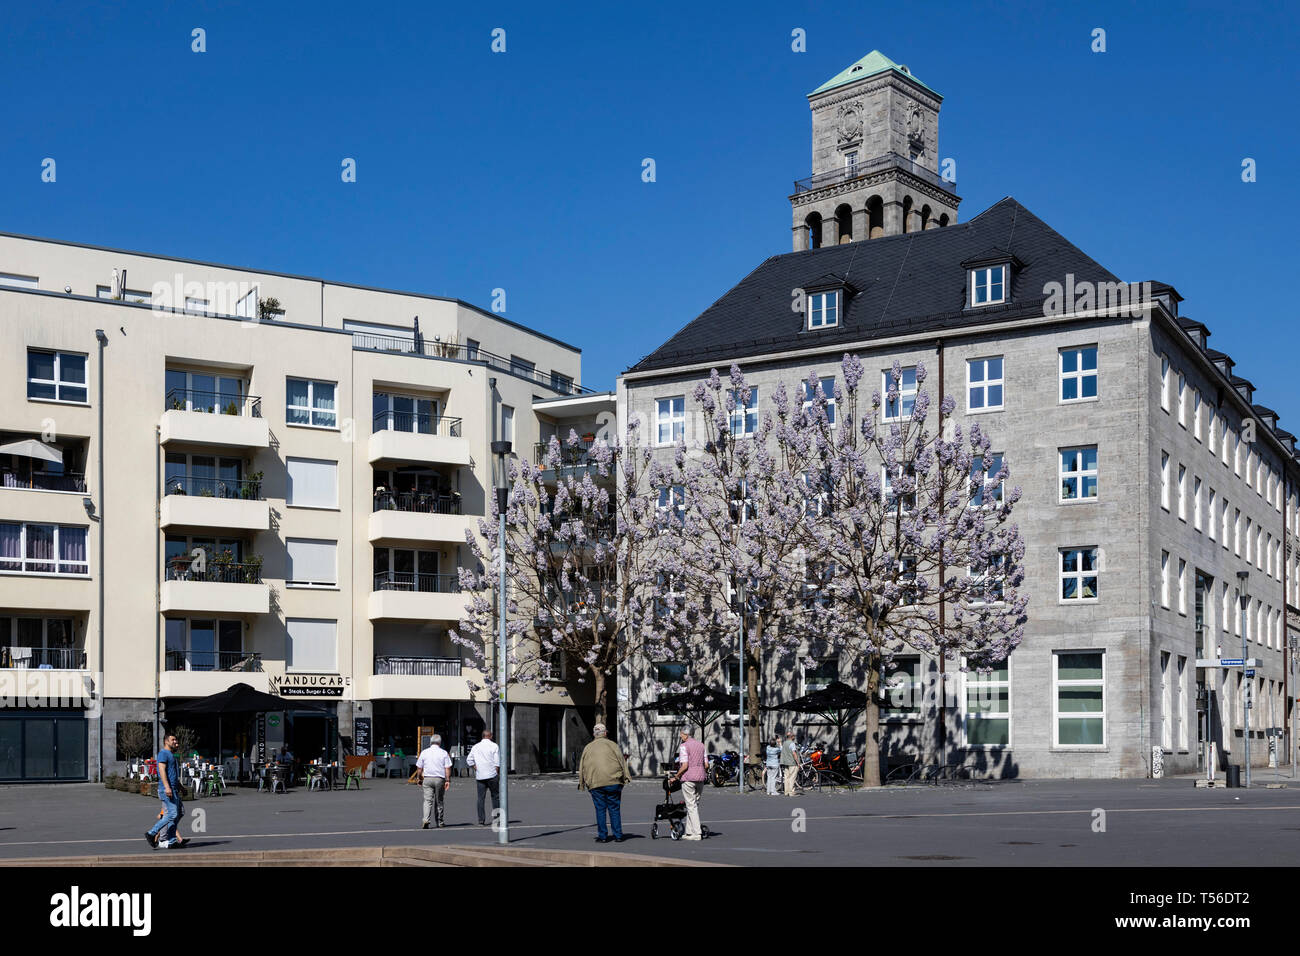 Turm des Rathauses mit der Entwicklung des neuen Gehäuses Ruhrquartier, Mülheim an der Ruhr, Deutschland Stockfoto